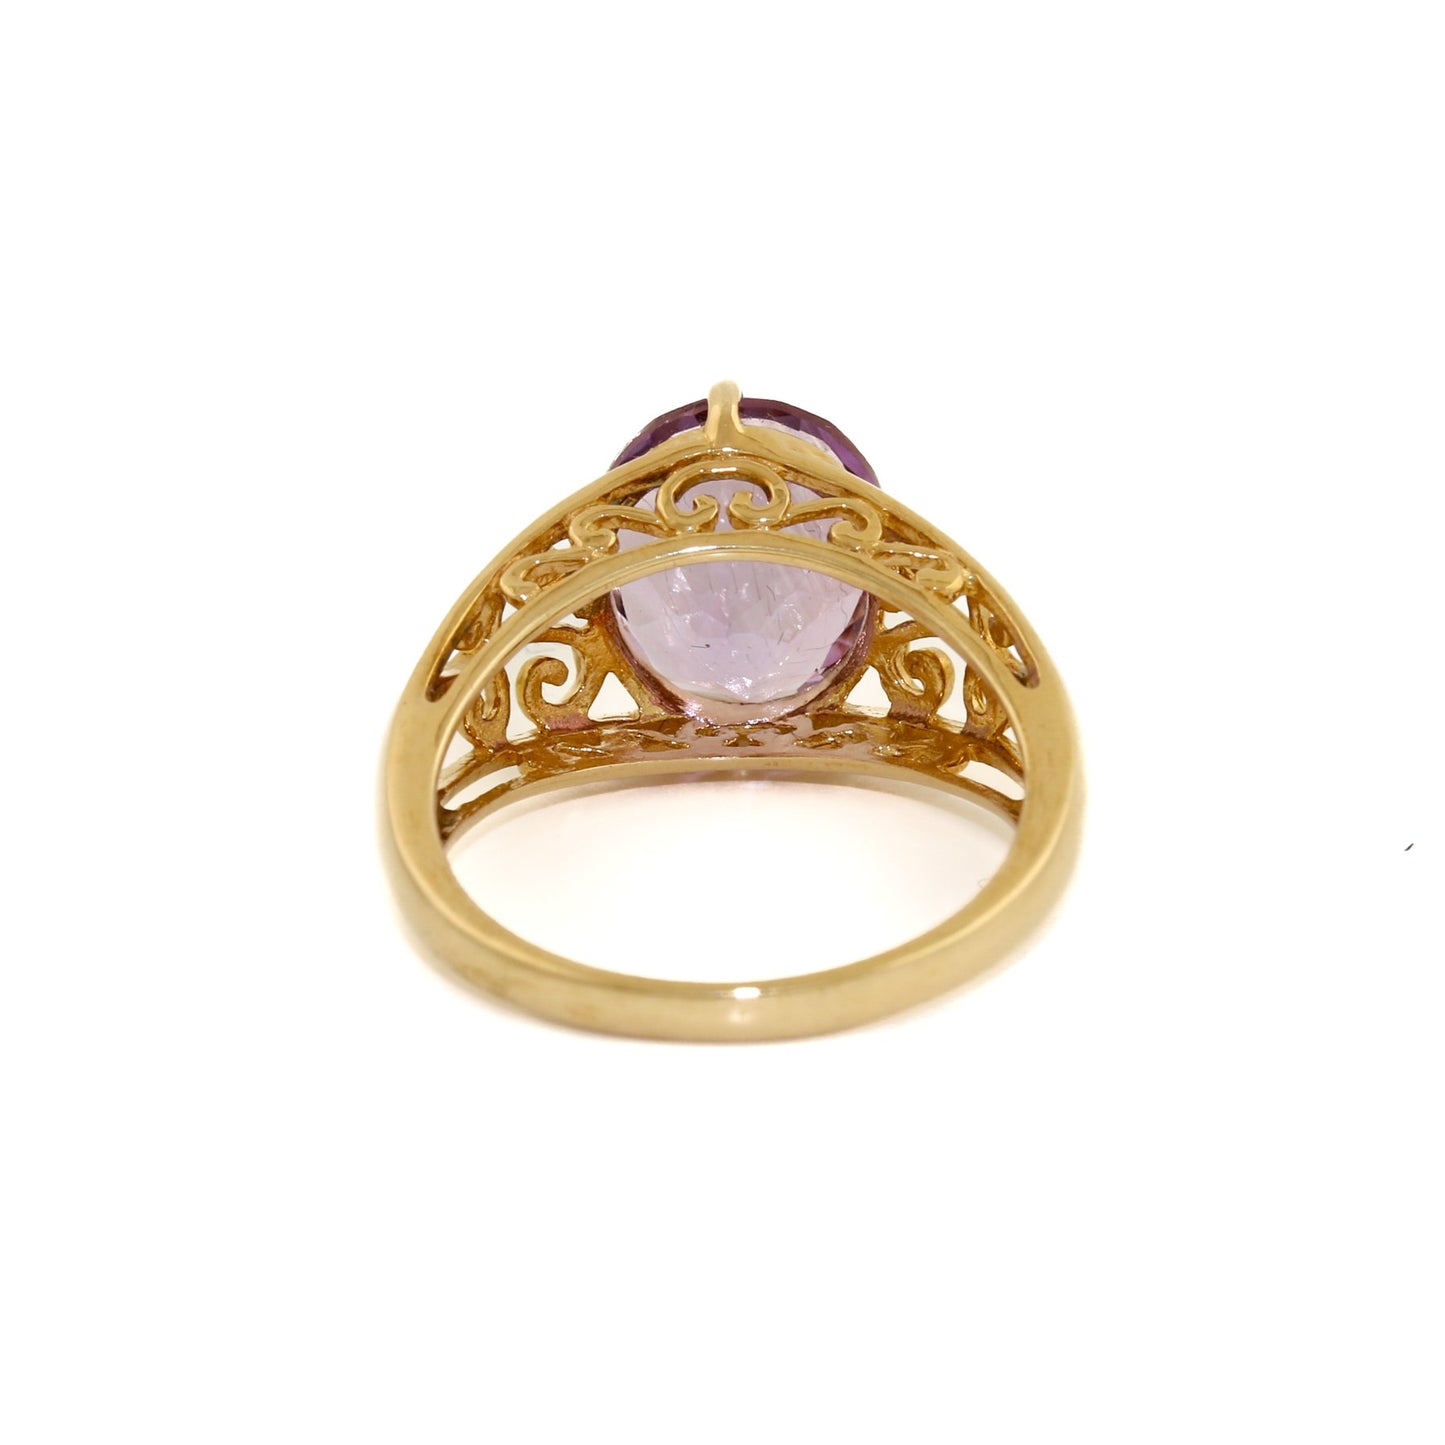 Primal 14 KT Gold x Amethyst Filigree Cocktail Ring - Kingdom Jewelry